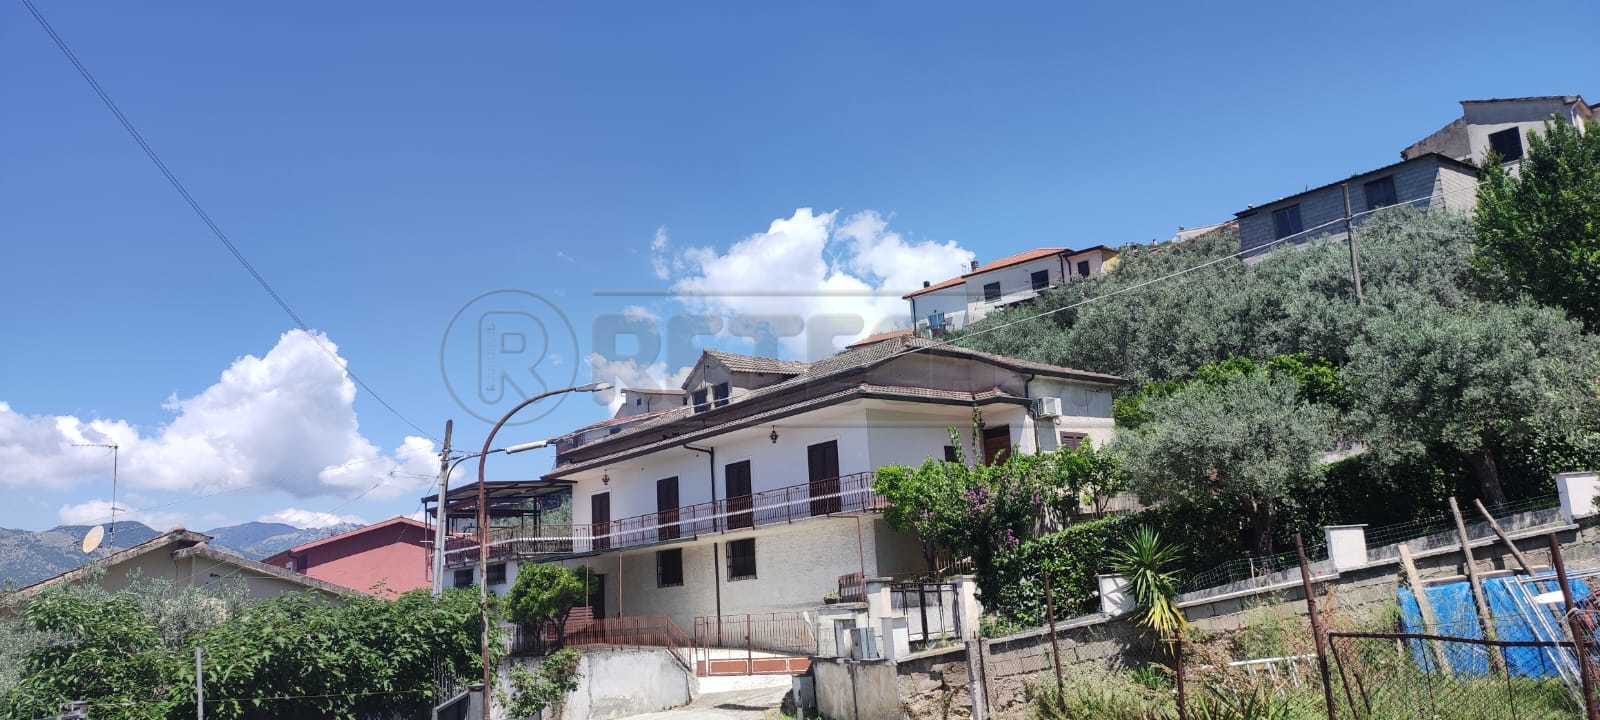 Porzione di casa in Vendita a Sant'Elia Fiumerapido Via Portella